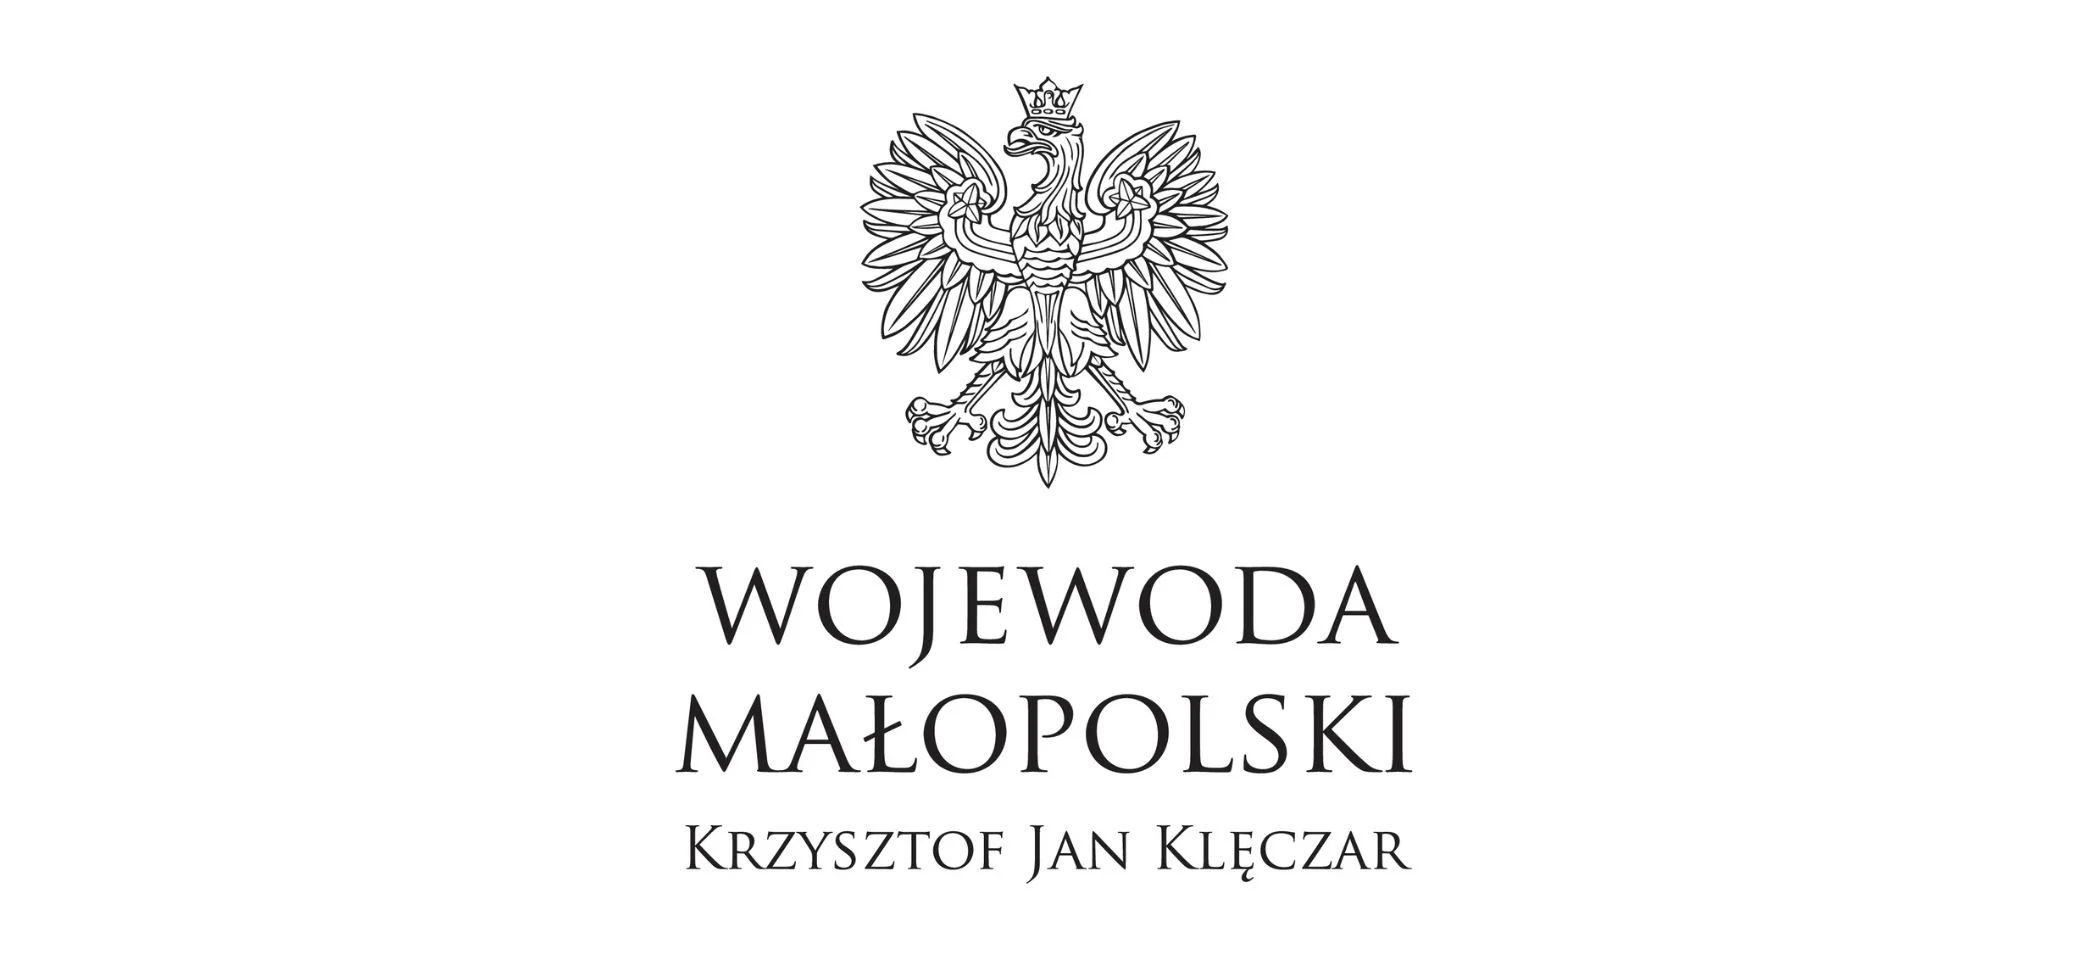 Logo Wojewoda Kraków patronat KIGN